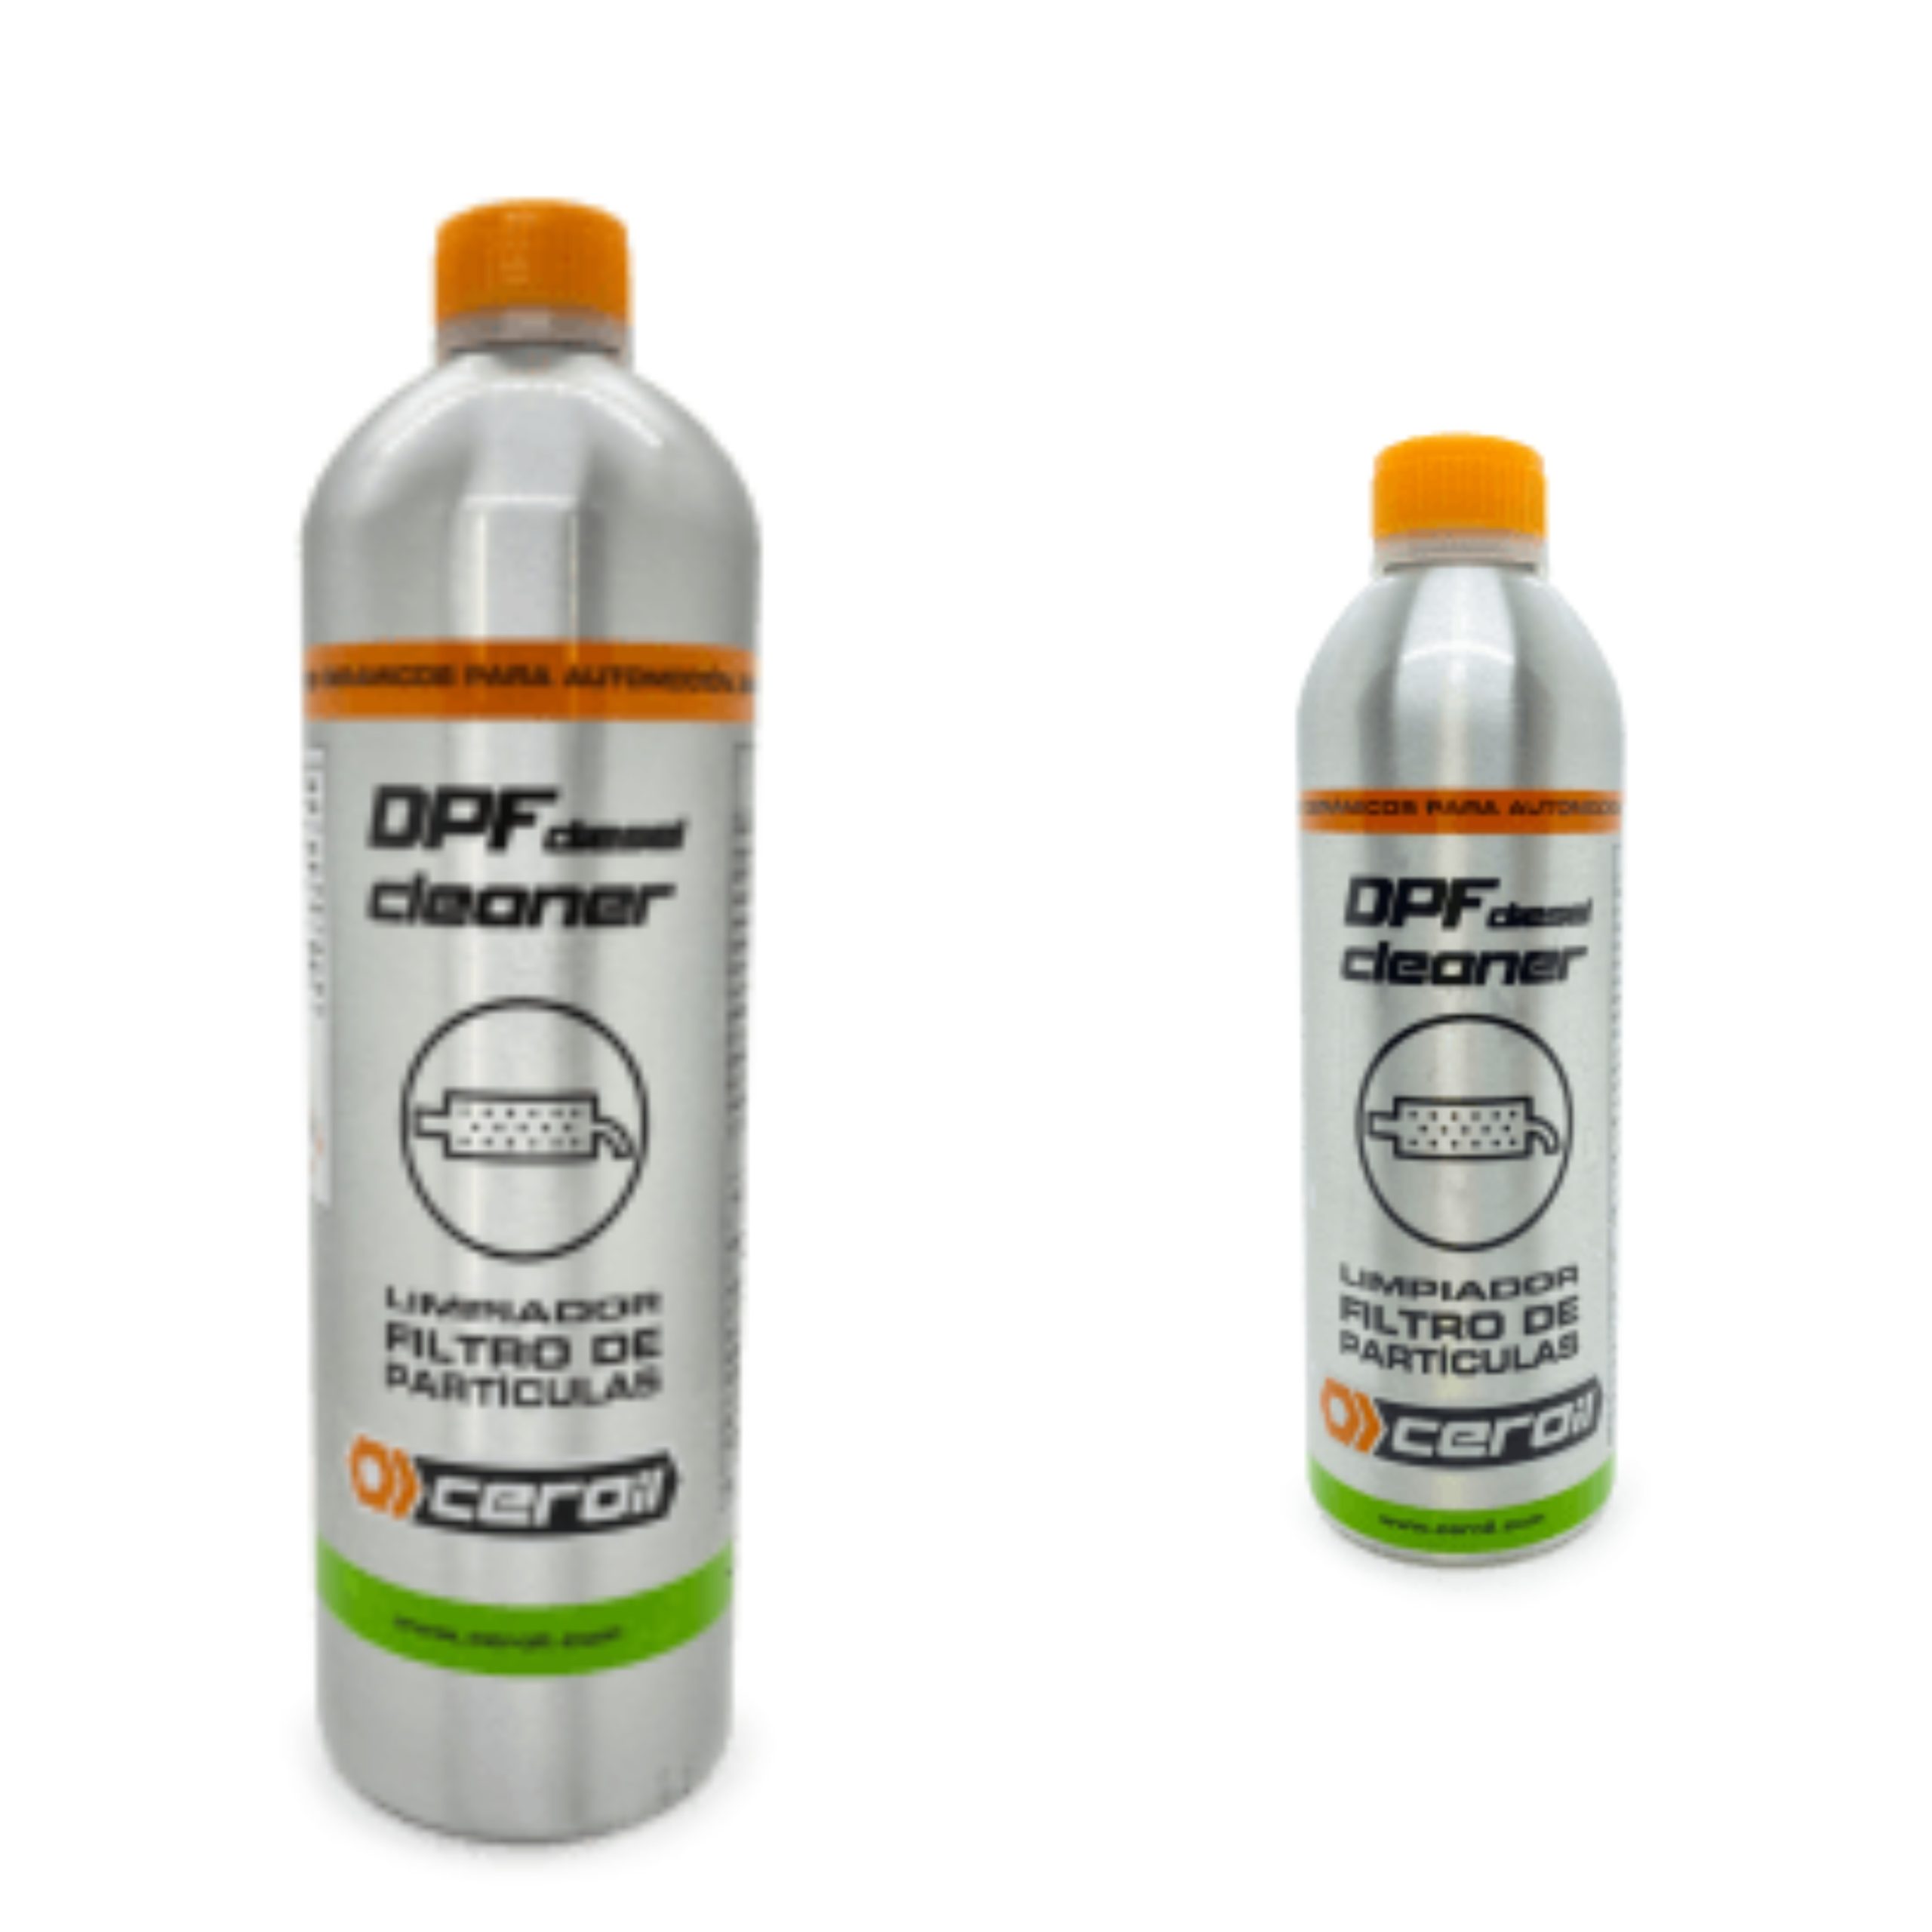 Dpf aditivo para tratamiento de filtro de particulas diesel